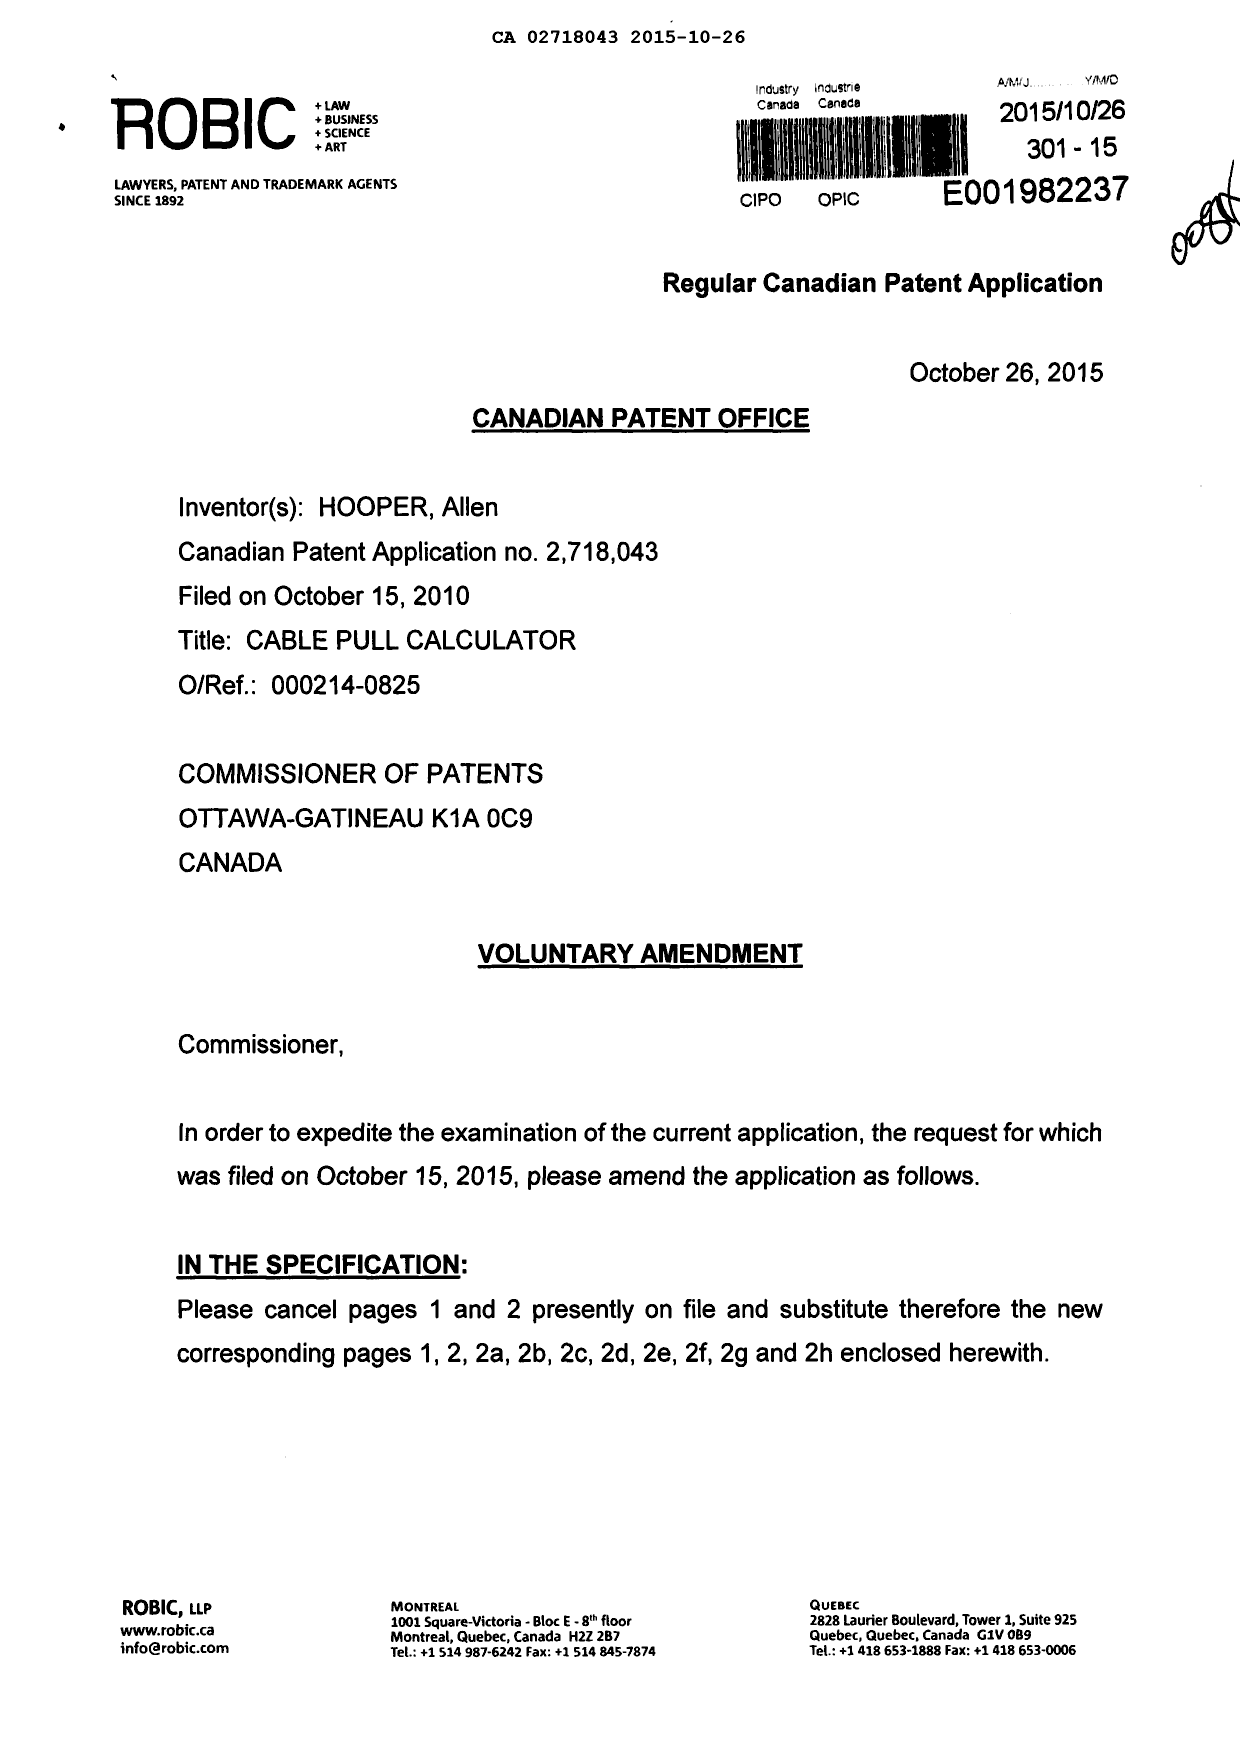 Document de brevet canadien 2718043. Poursuite-Amendment 20141226. Image 1 de 30